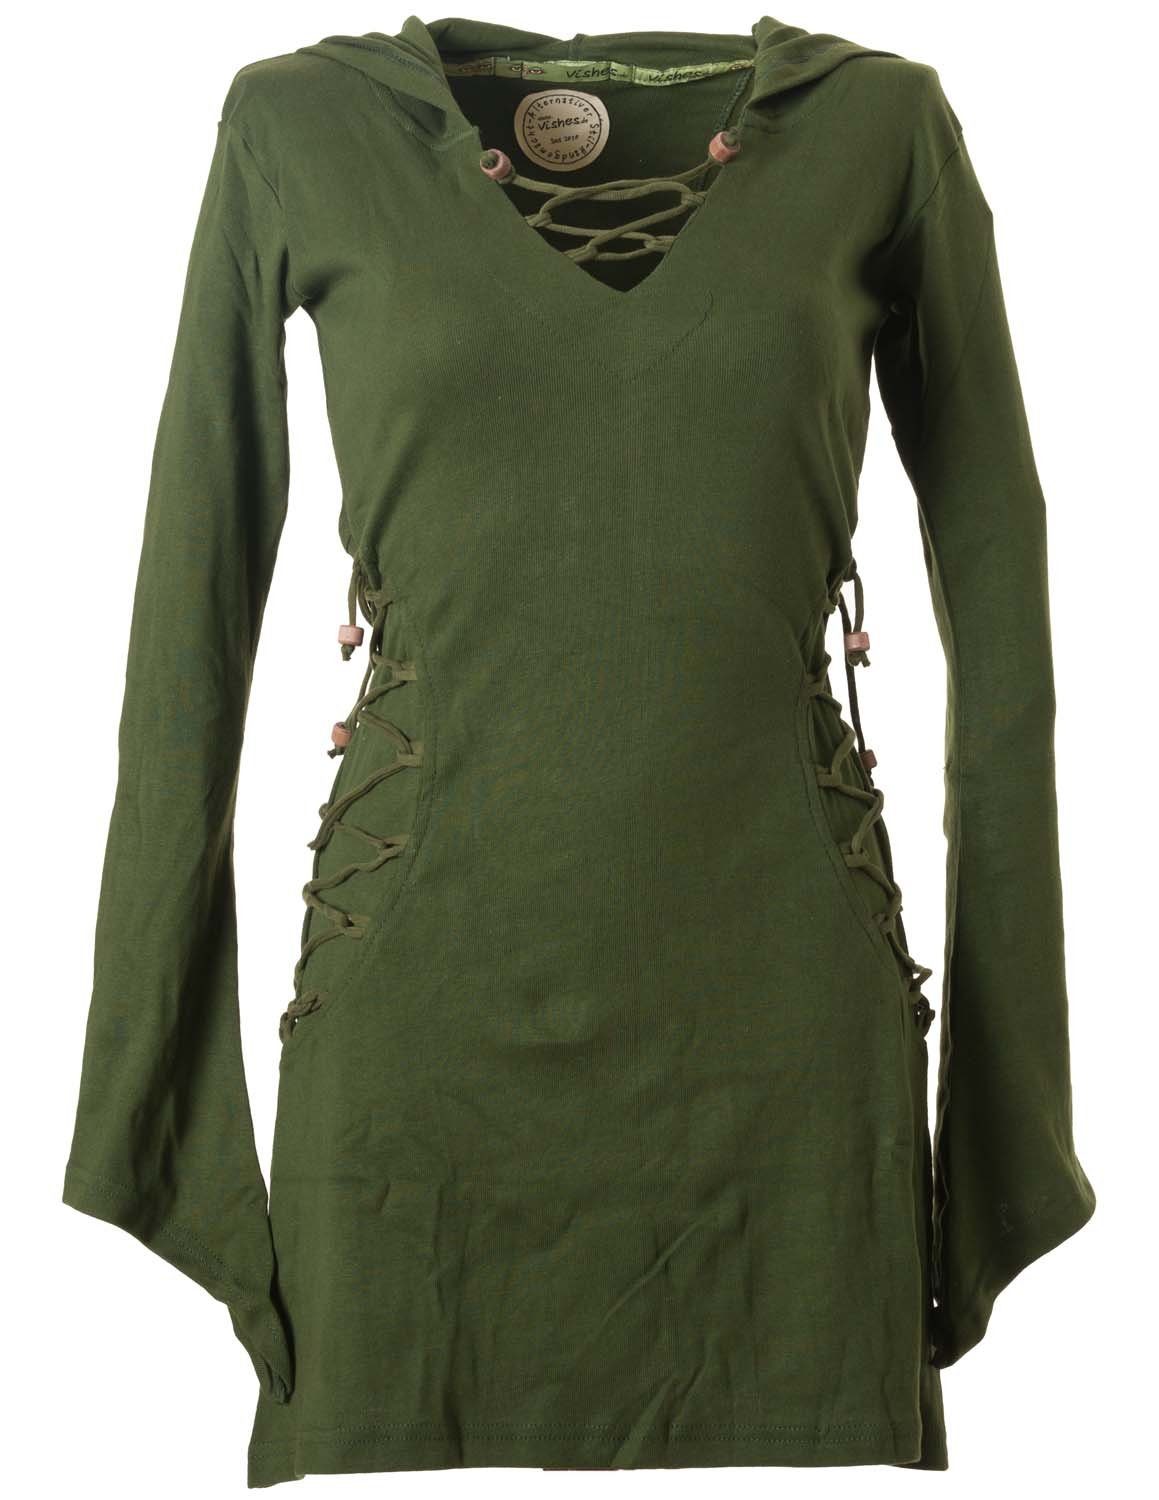 Vishes Zipfelkleid Elfenkleid mit Zipfelkapuze Bändern zum Schnüren Ethno, Hoody, Gothik Style olive